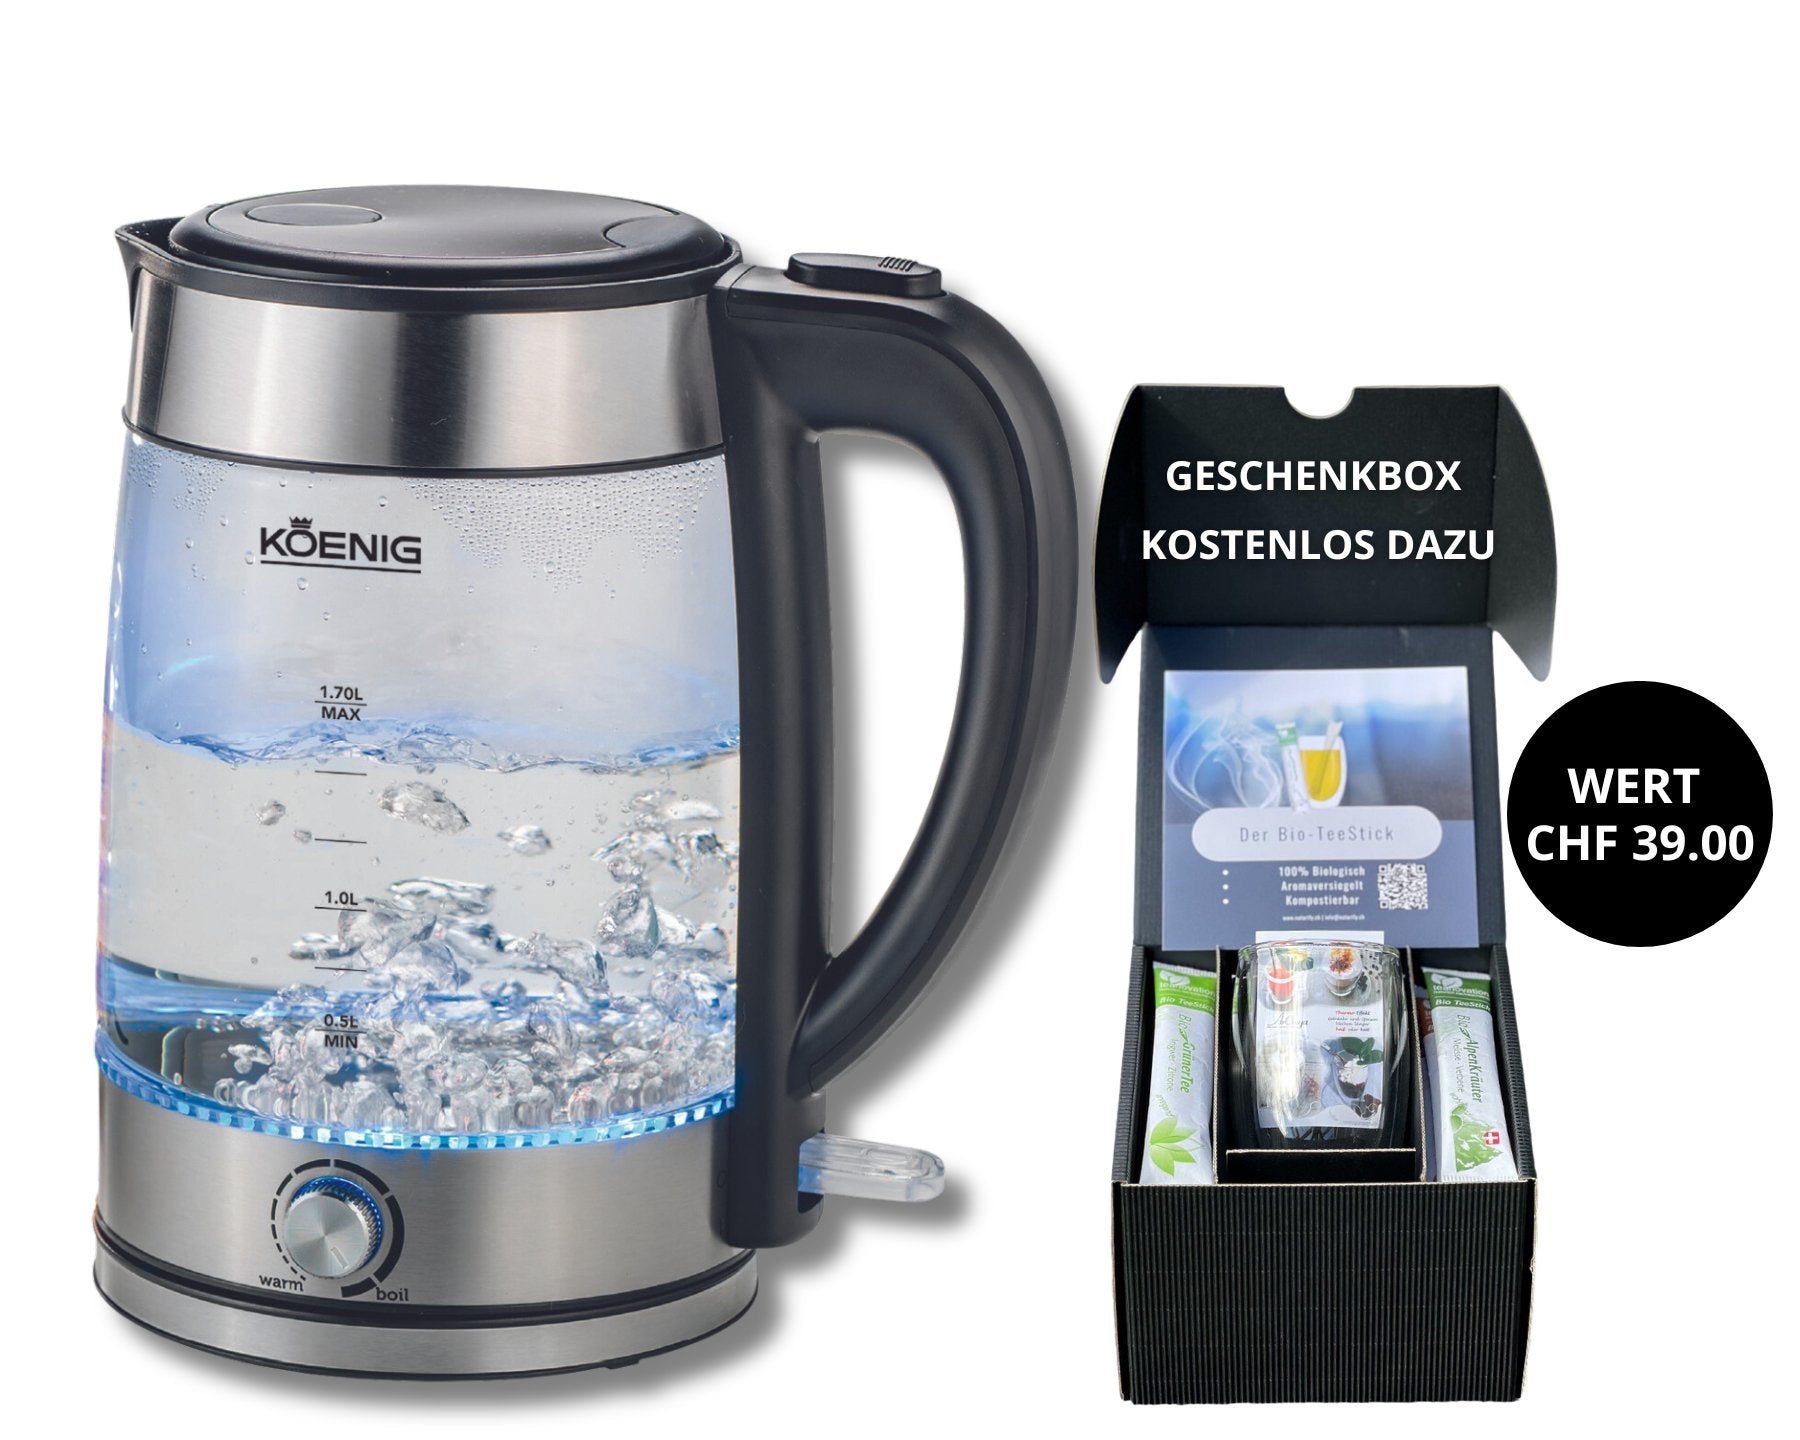 KOENIG Glaswasserkocher + Geschenkbox - kitchen-more.ch, kostenloser Versand in der ganzen Schweiz